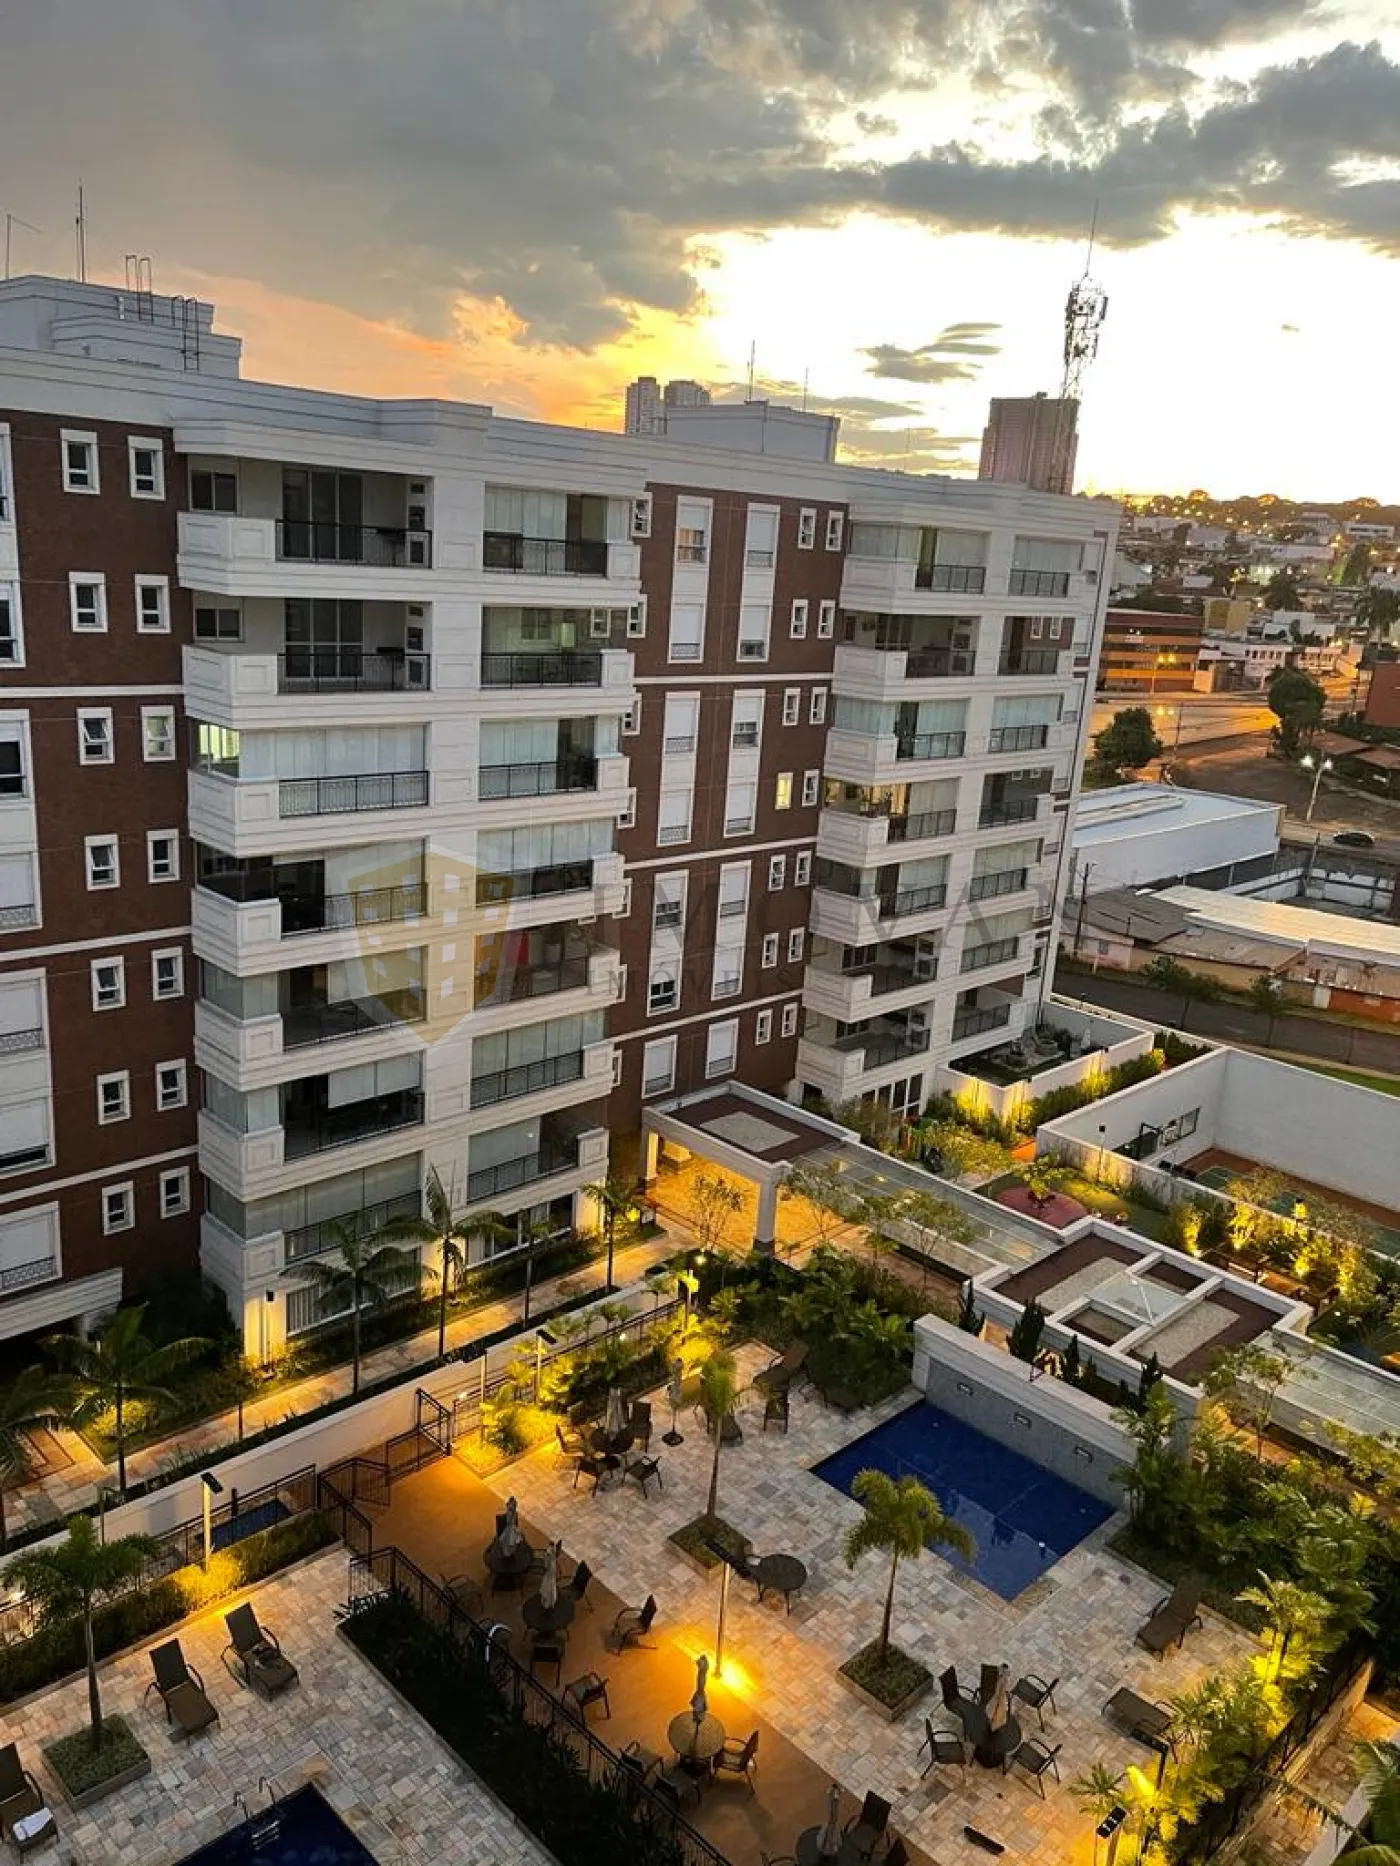 Comprar Apartamento / Padrão em Ribeirão Preto R$ 990.000,00 - Foto 5